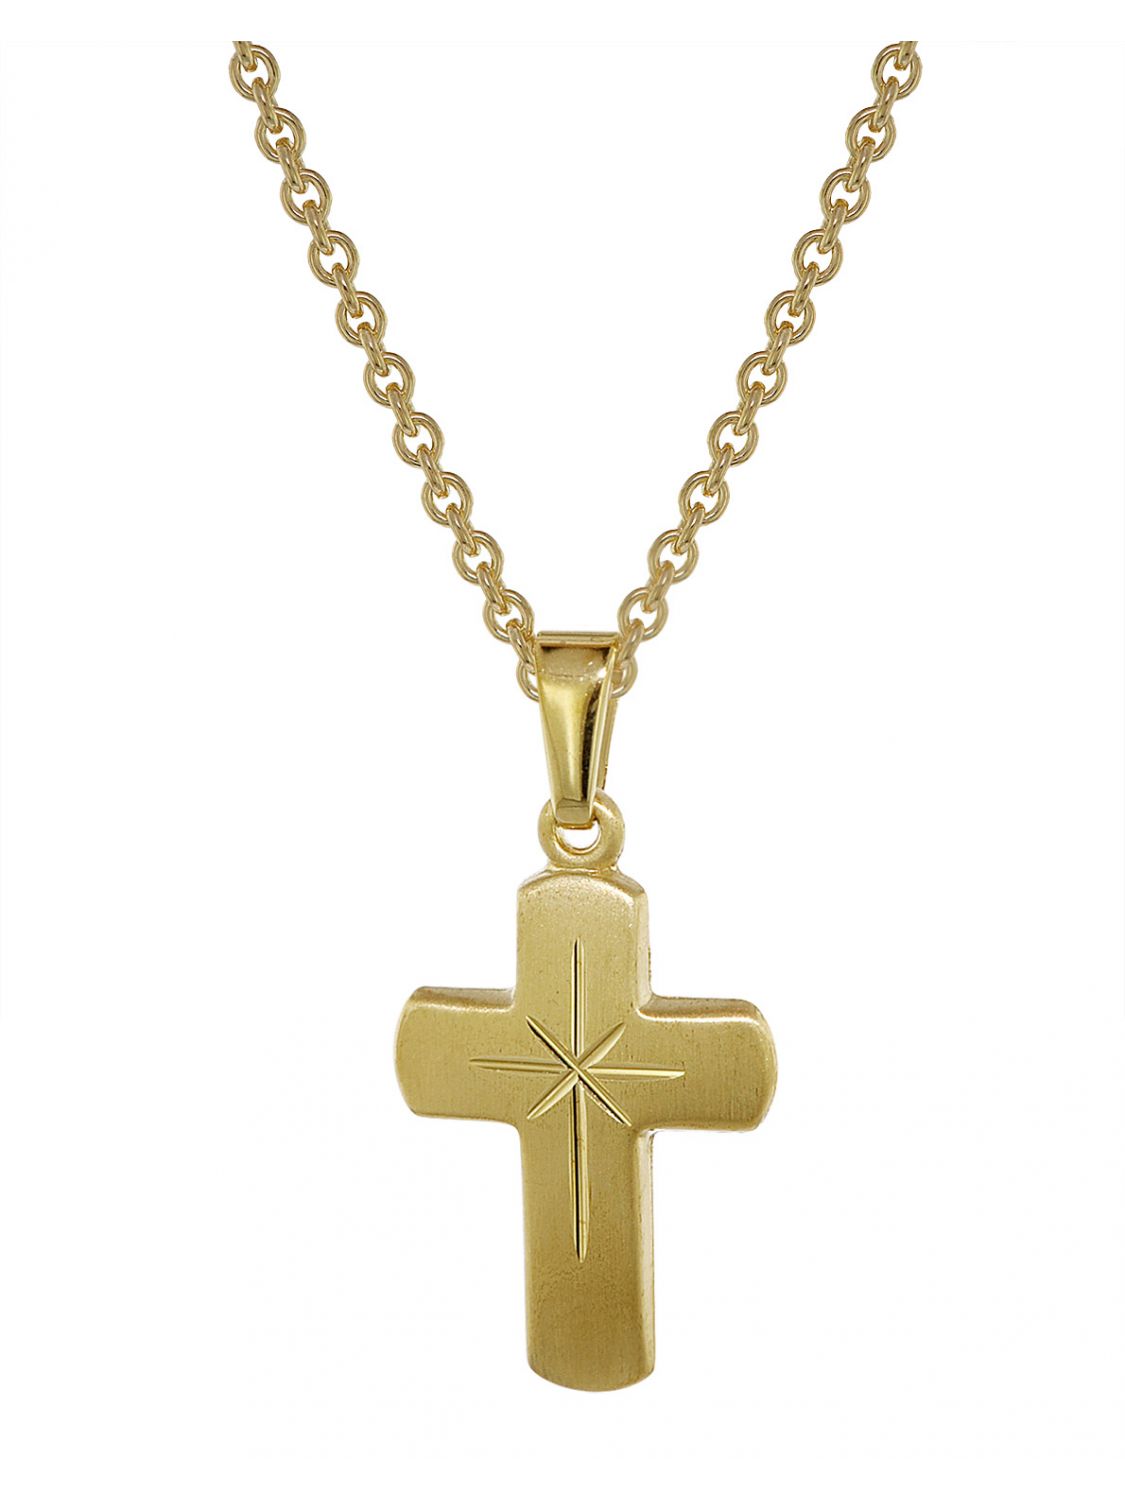 Kinder-Set Kreuz mit Engel Anhänger Echt Gold 333 mit Kette Silber 925 vergoldet 